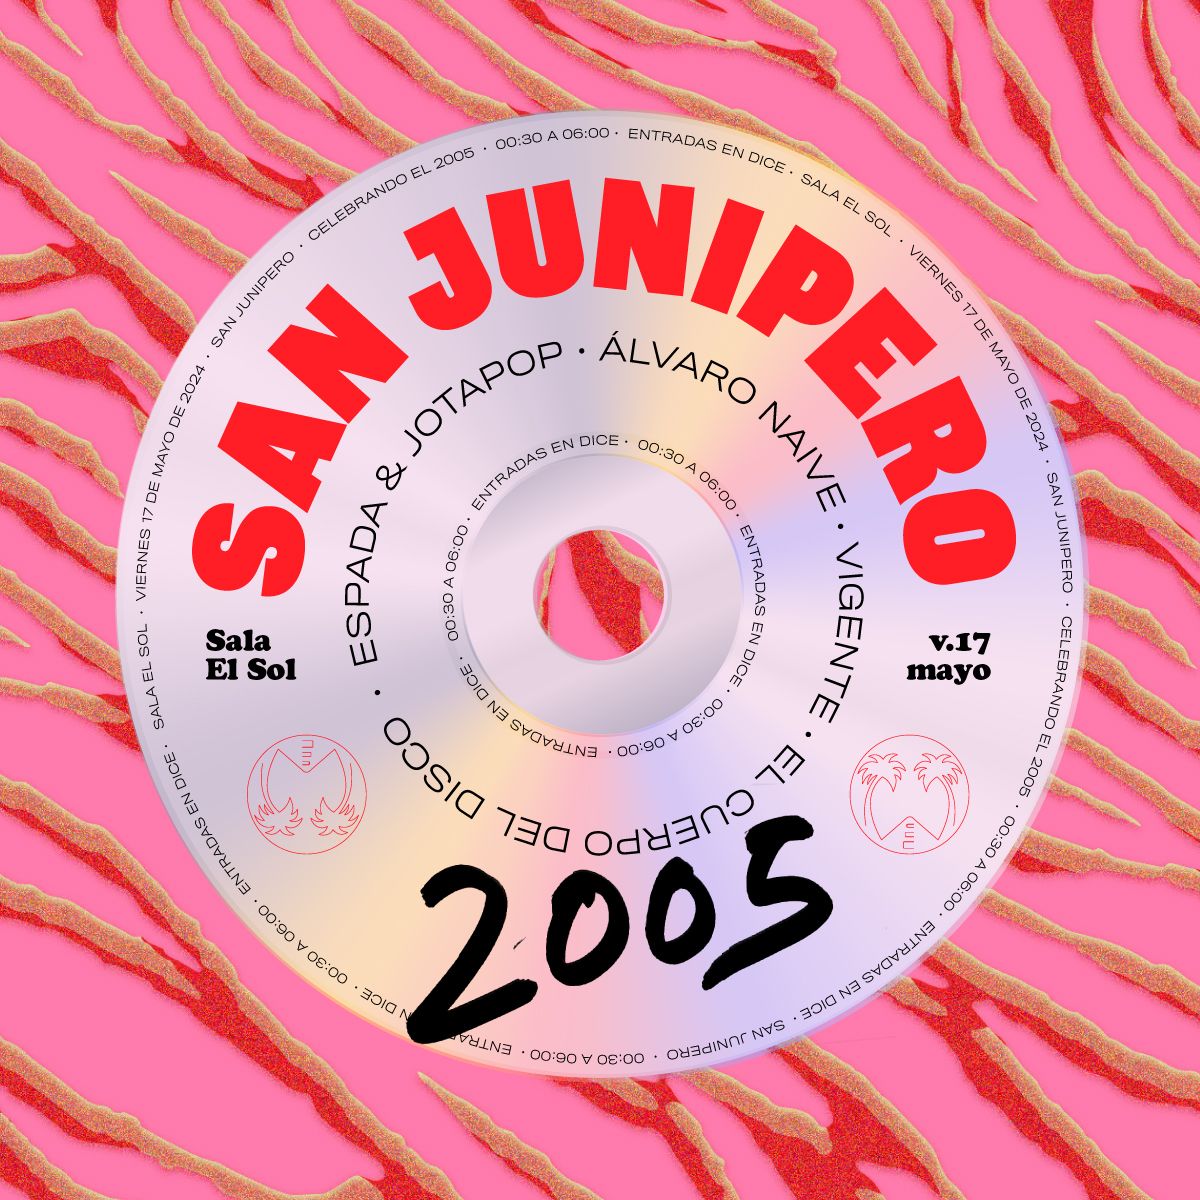 El Cuerpo del Disco presenta San Junipero 2005: Espada & JotaPop + Guille M. Ferrando  + Vigente + El Cuerpo del Disco